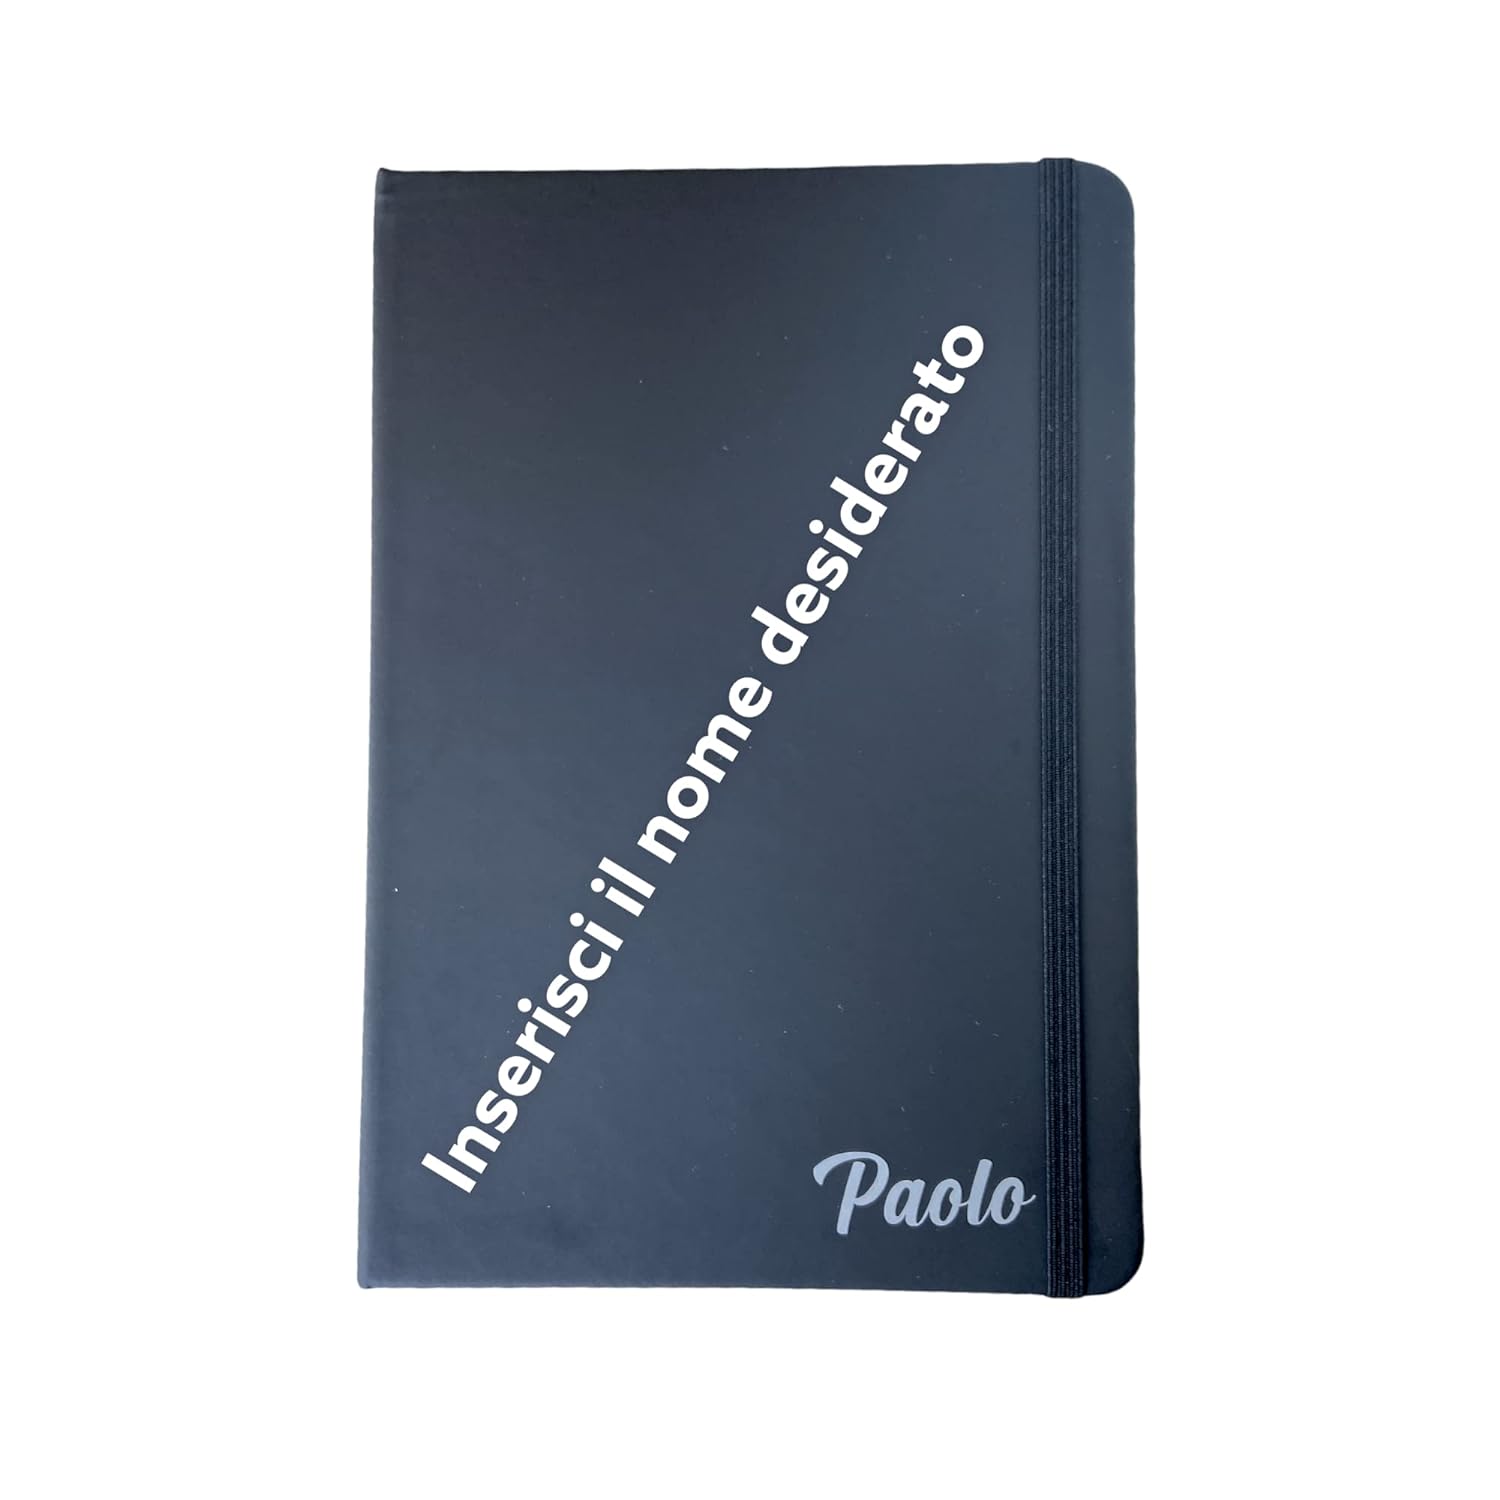 Notebook stile Moleskine Classic personalizzato con dedica. Formato Large 14,7 x 21 cm, 100 Pagine